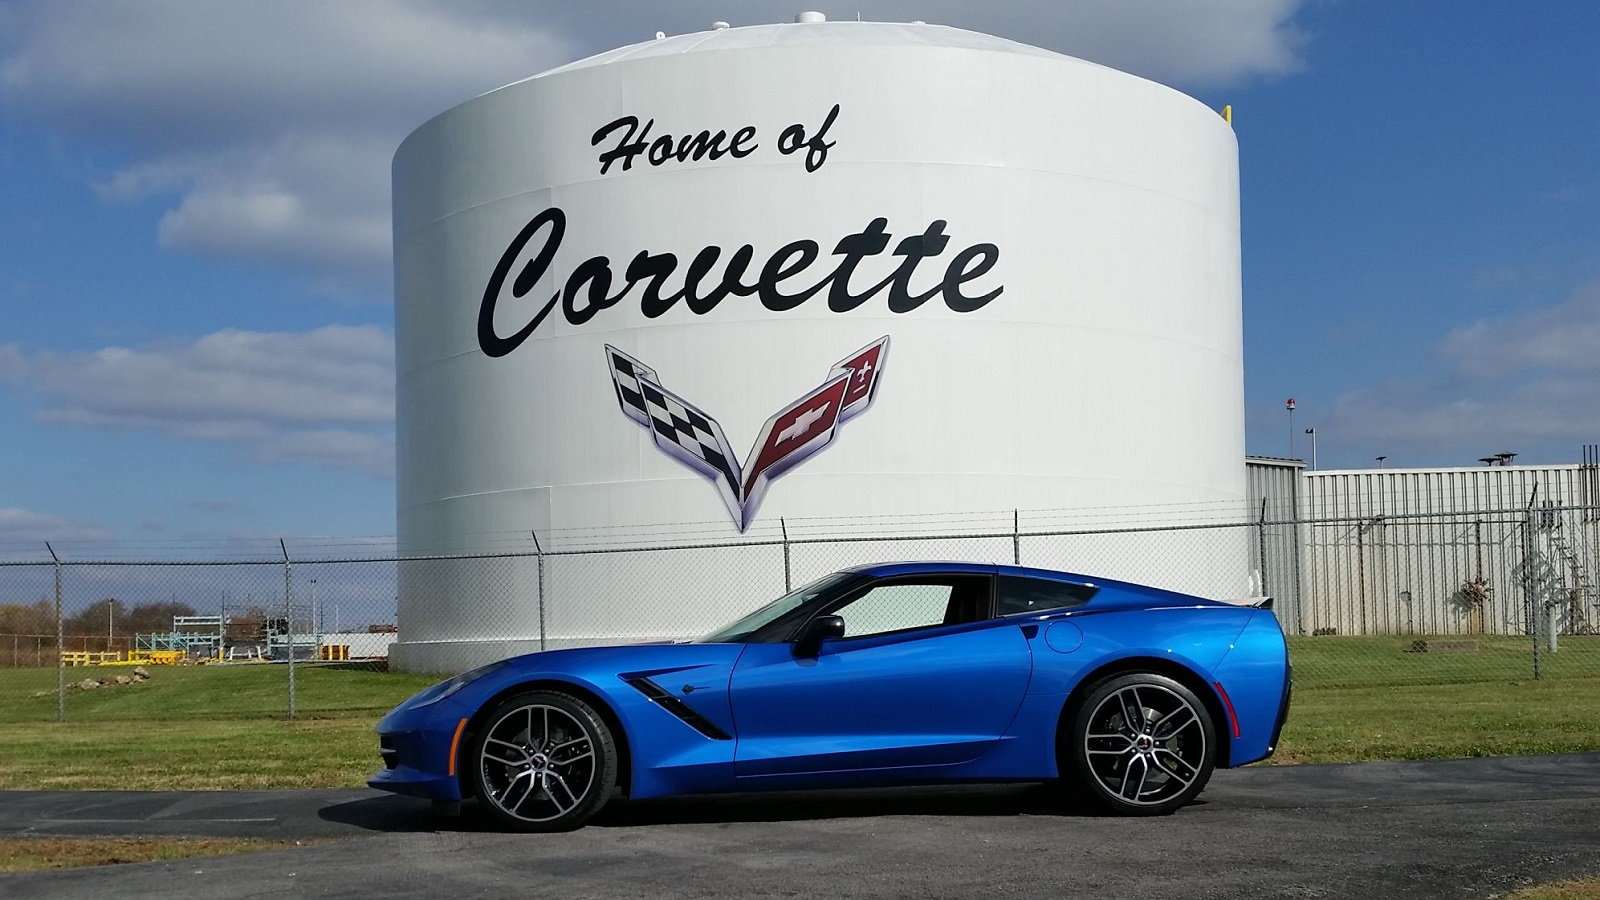 how long is the corvette factory tour